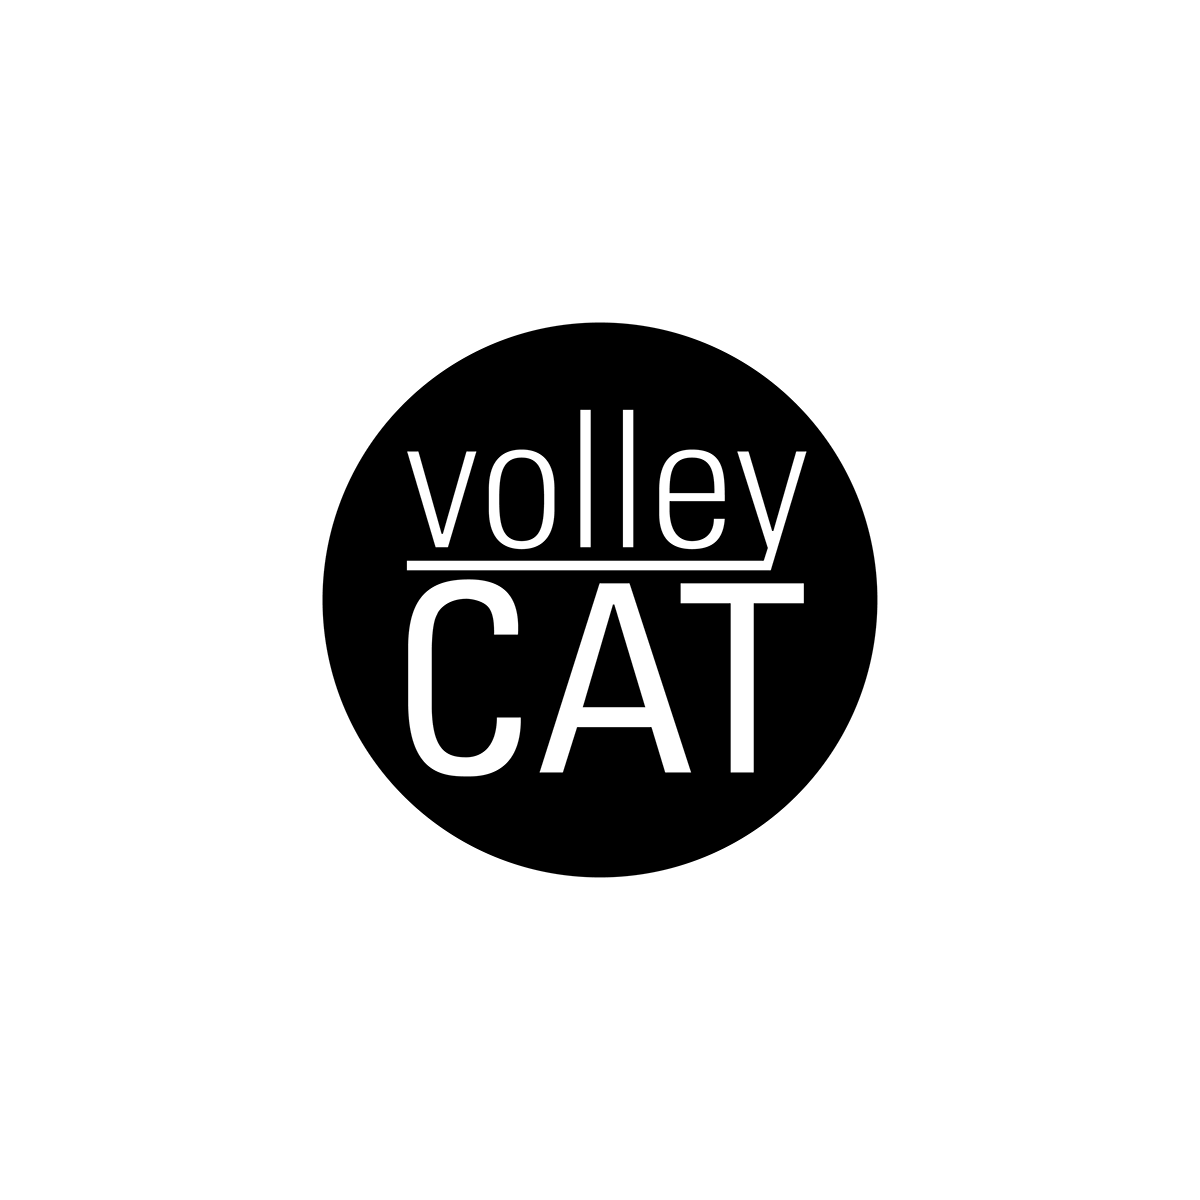 volley  design logo Internet volleyball